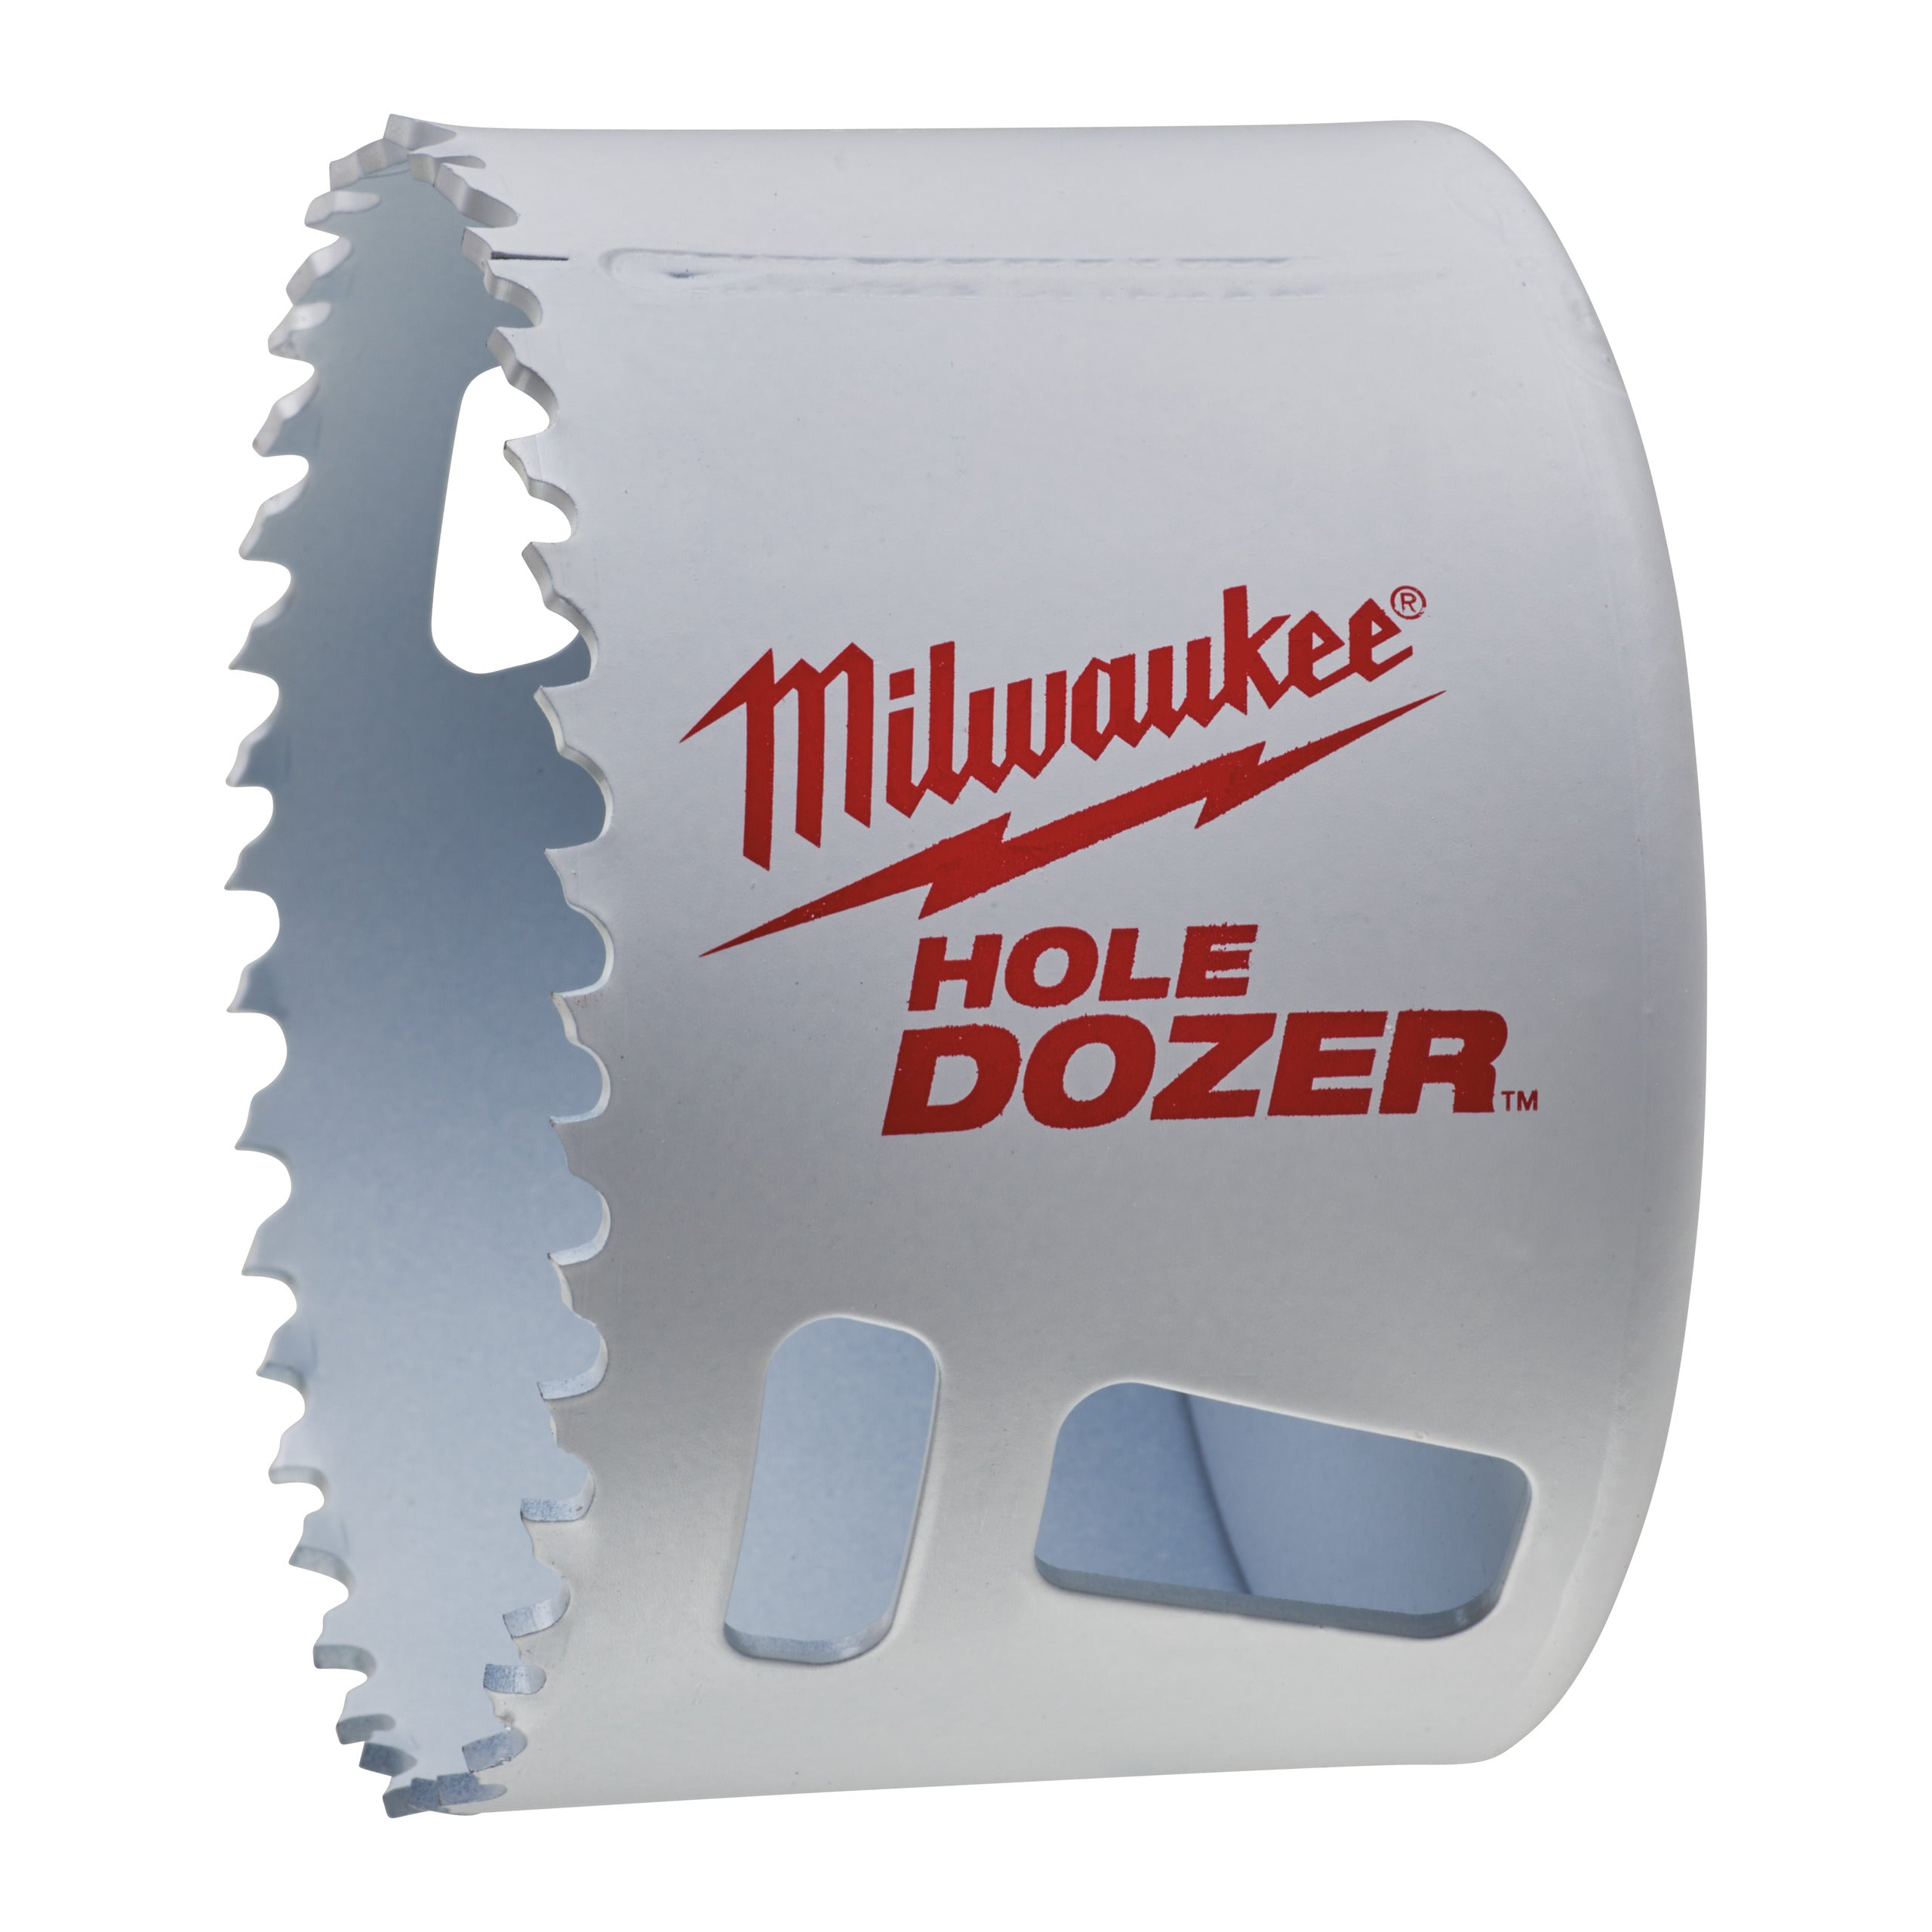 Carotă Milwaukee HOLE DOZER™ bi-metal Ø73 mm 49560167